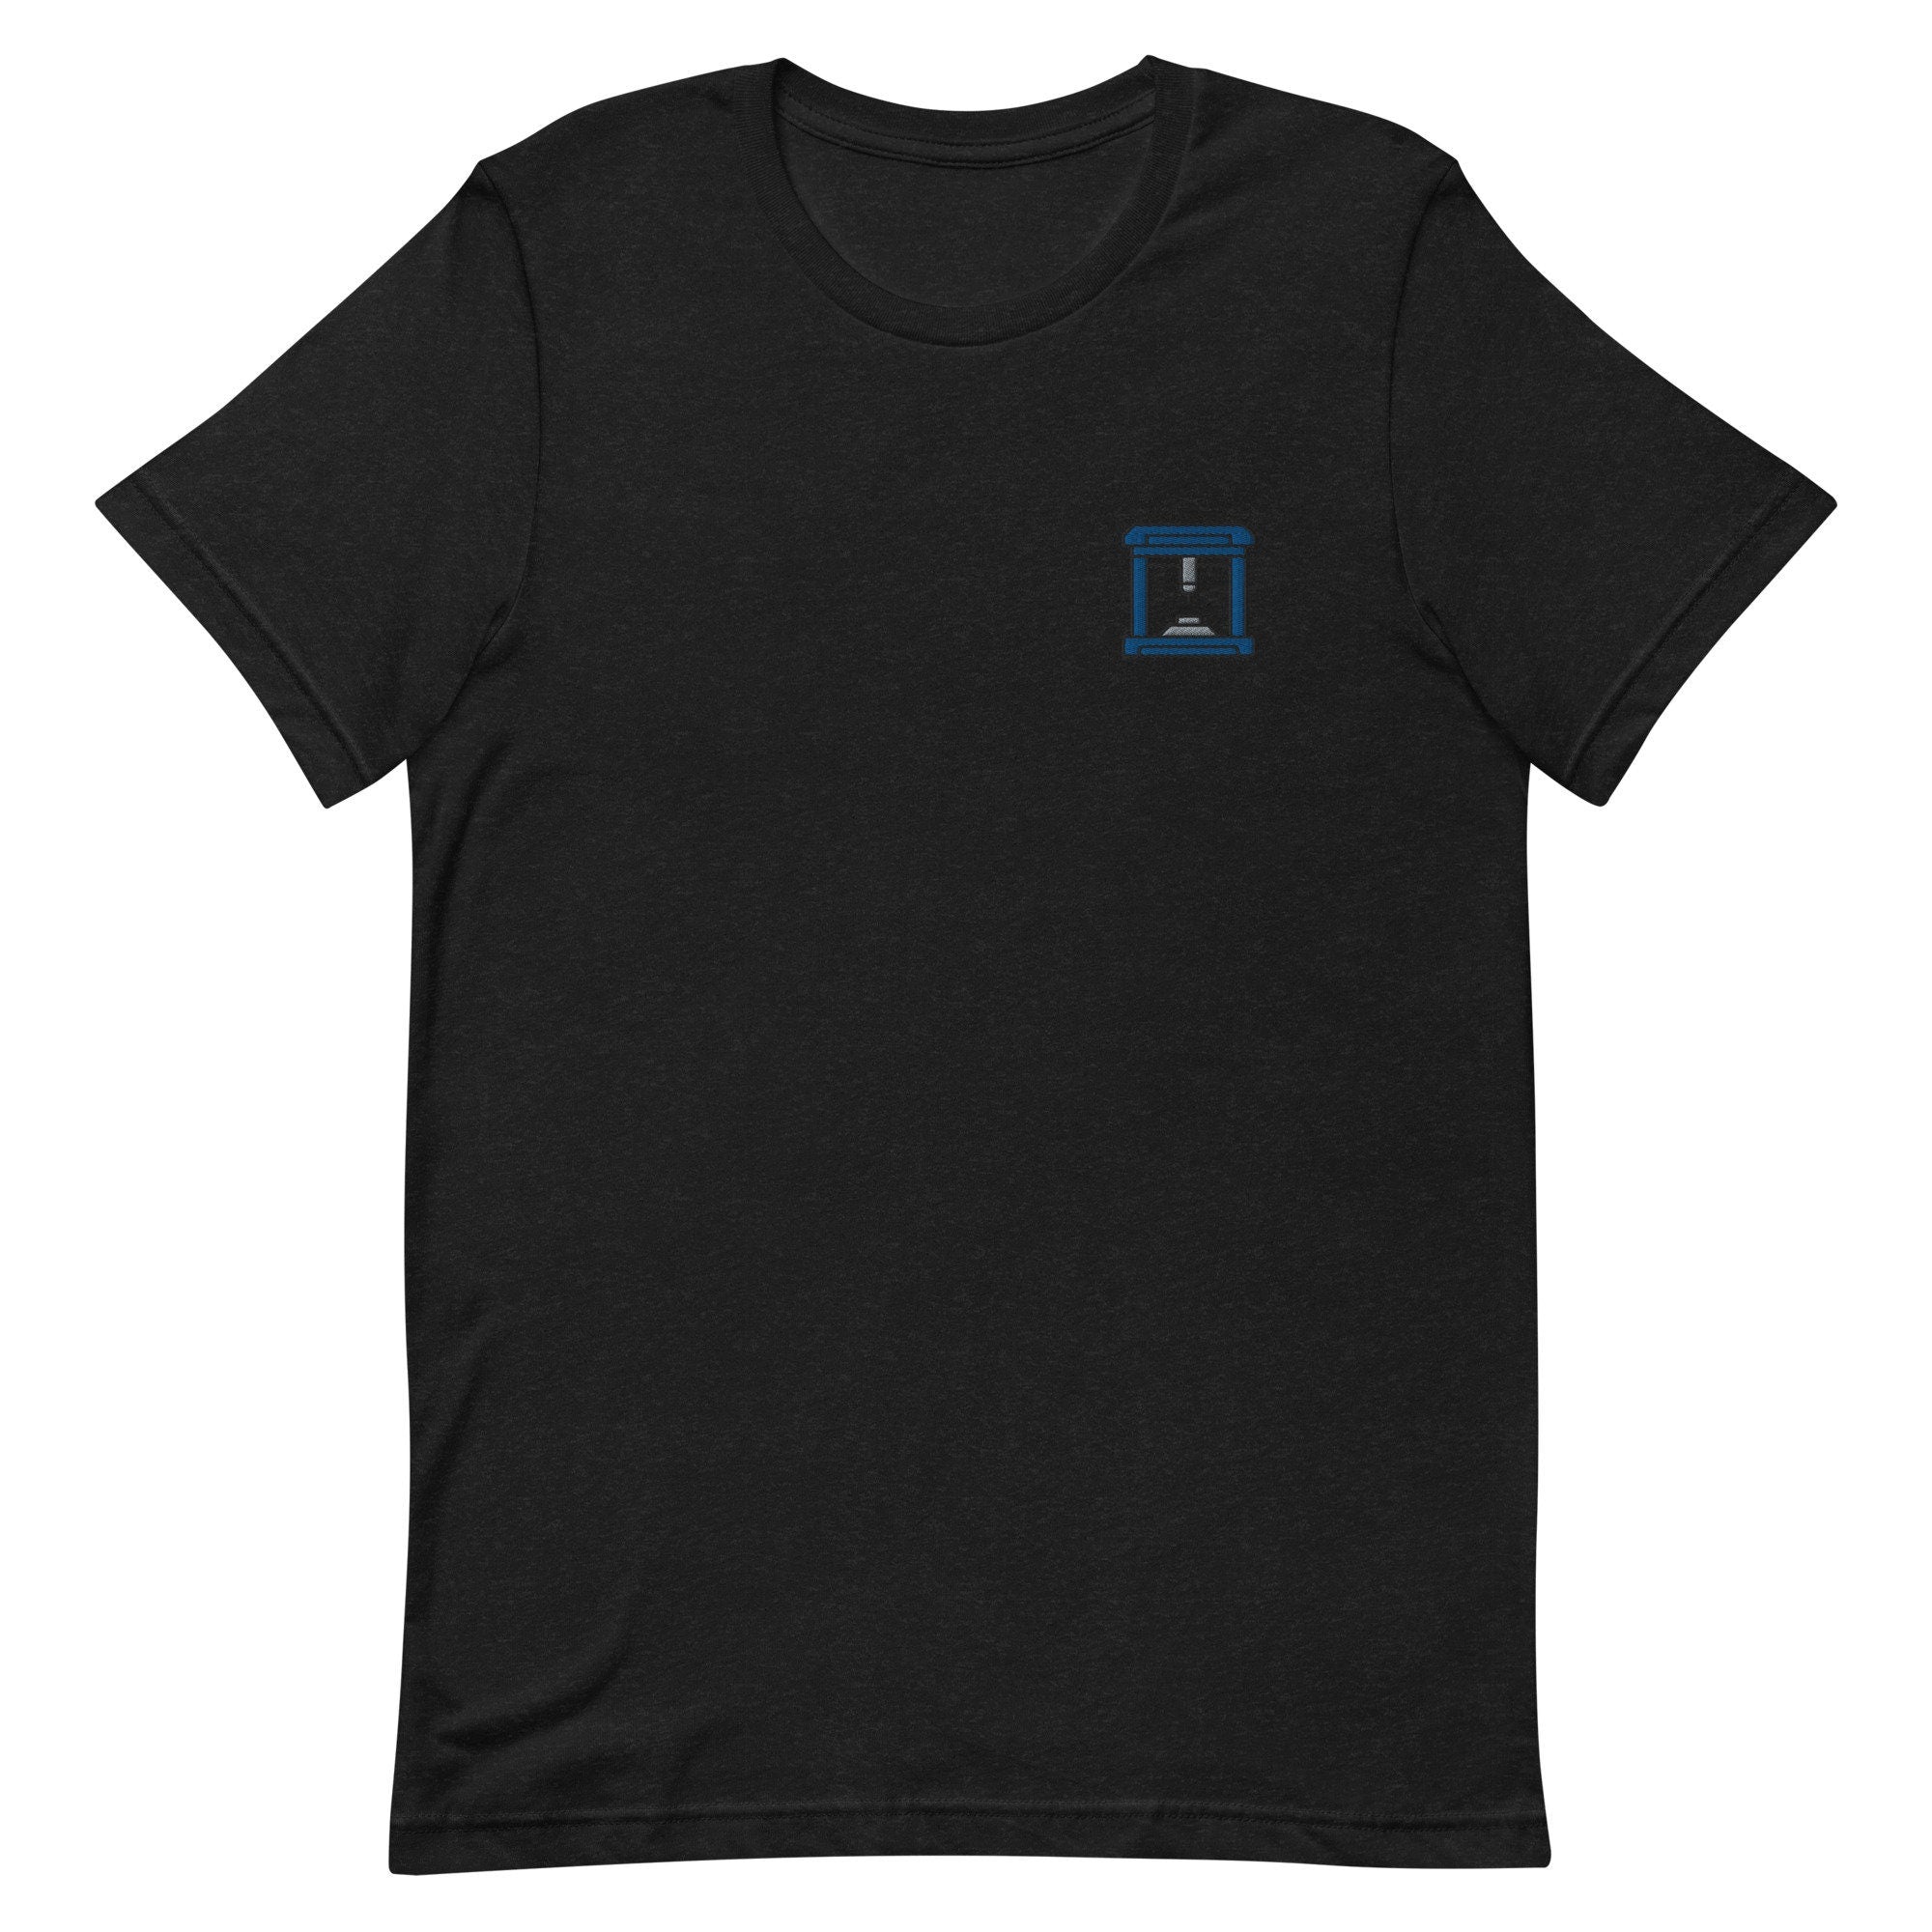 3D Printer Premium Men's T-Shirt, Embroidered Men's T-Shirt Gift for Boyfriend, Men's Short Sleeve Shirt - Multiple Colors